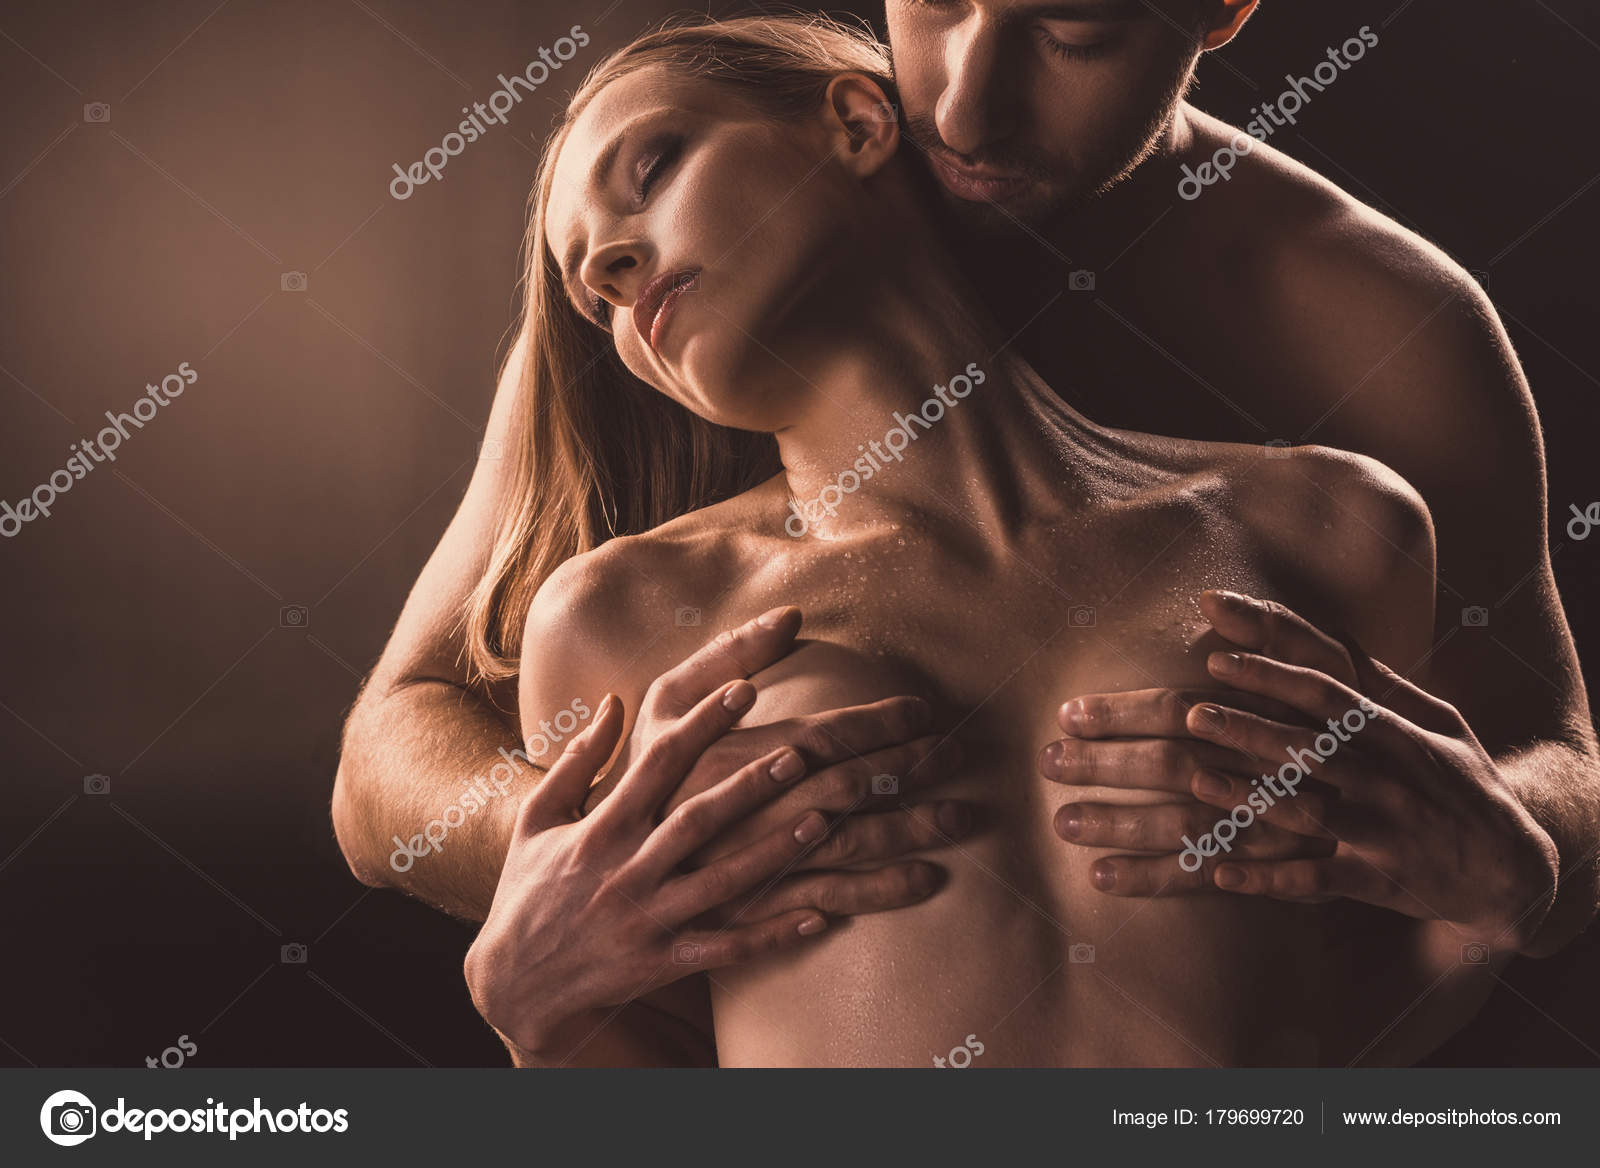 girlfriend against boob touch Porn Pics Hd